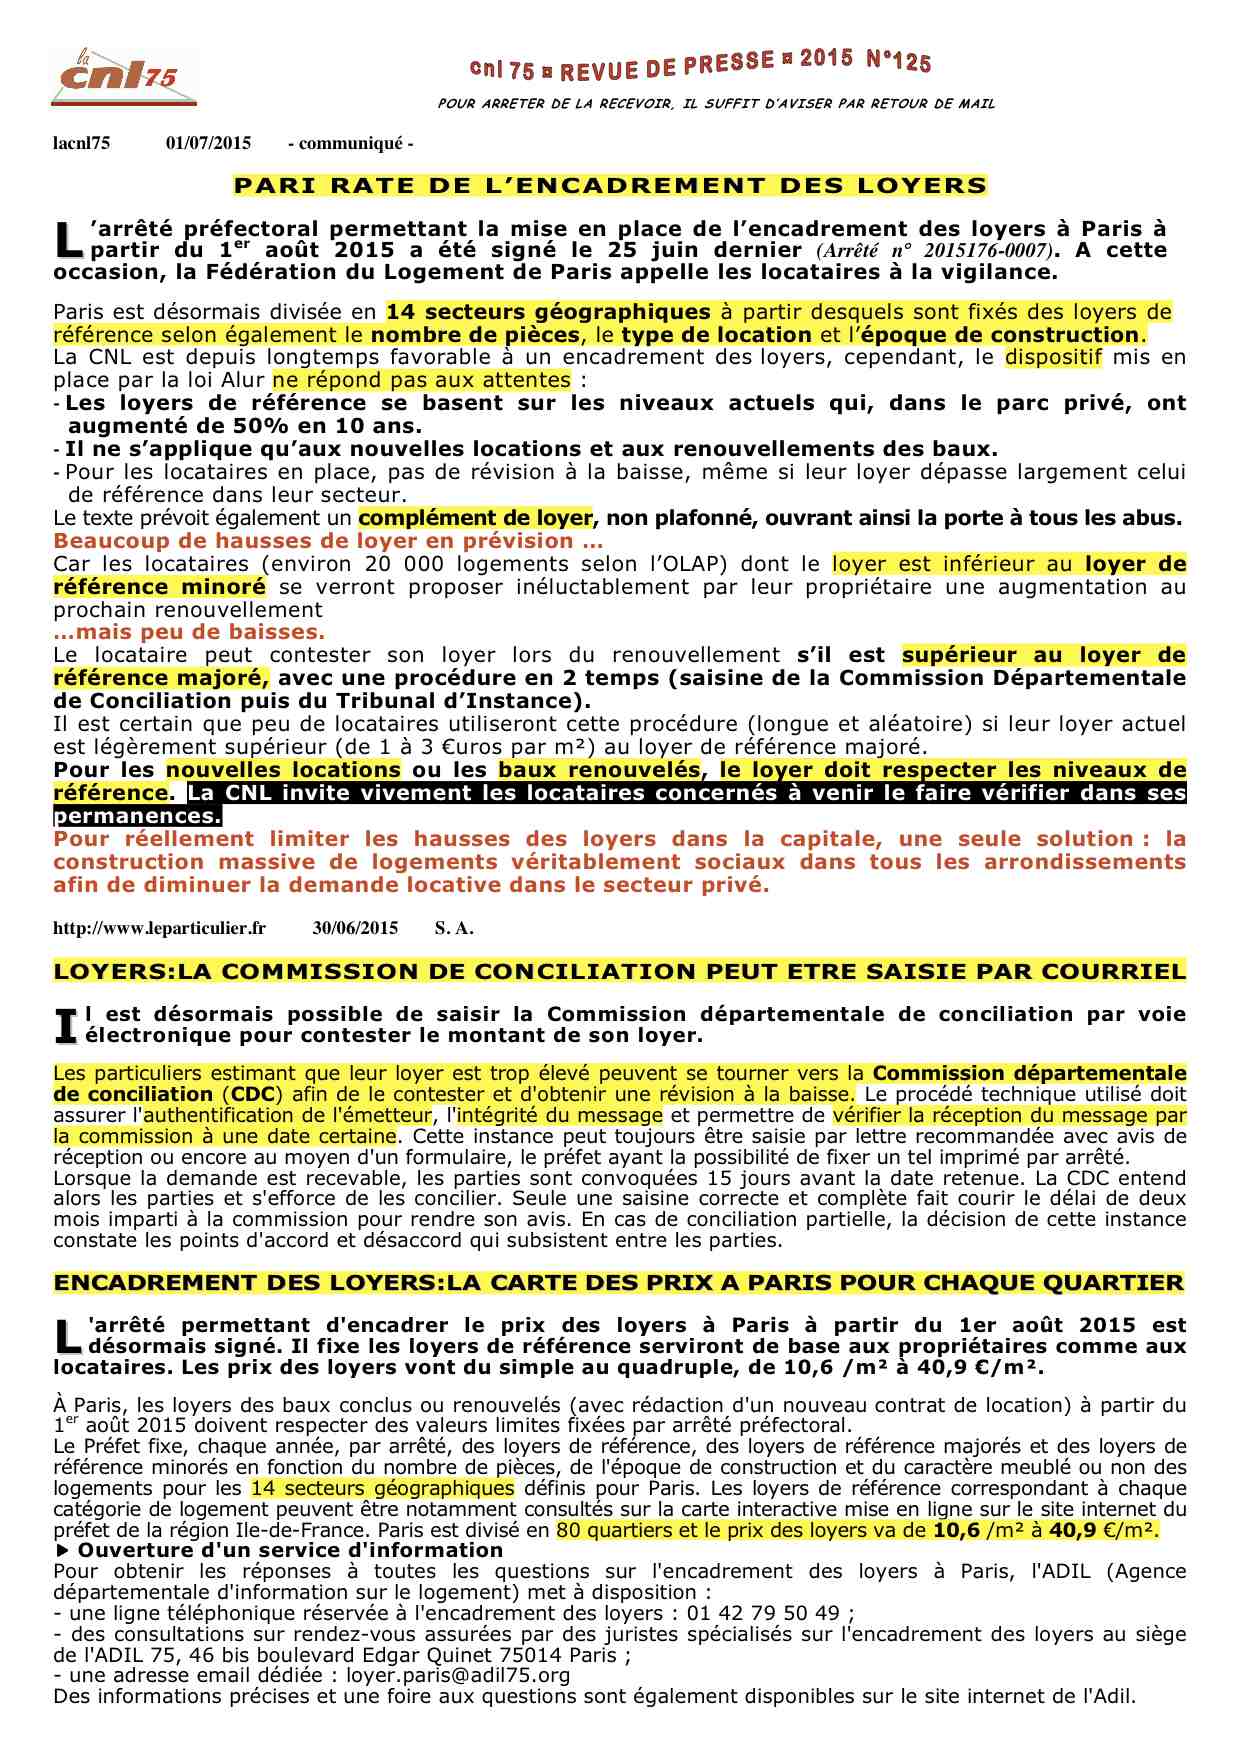 125 - COMMUNIQUE CNL75 _ ENCADREMENT LOYERS - SAISINE CDC - PARIS _ LOYERS ARRETE....jpg